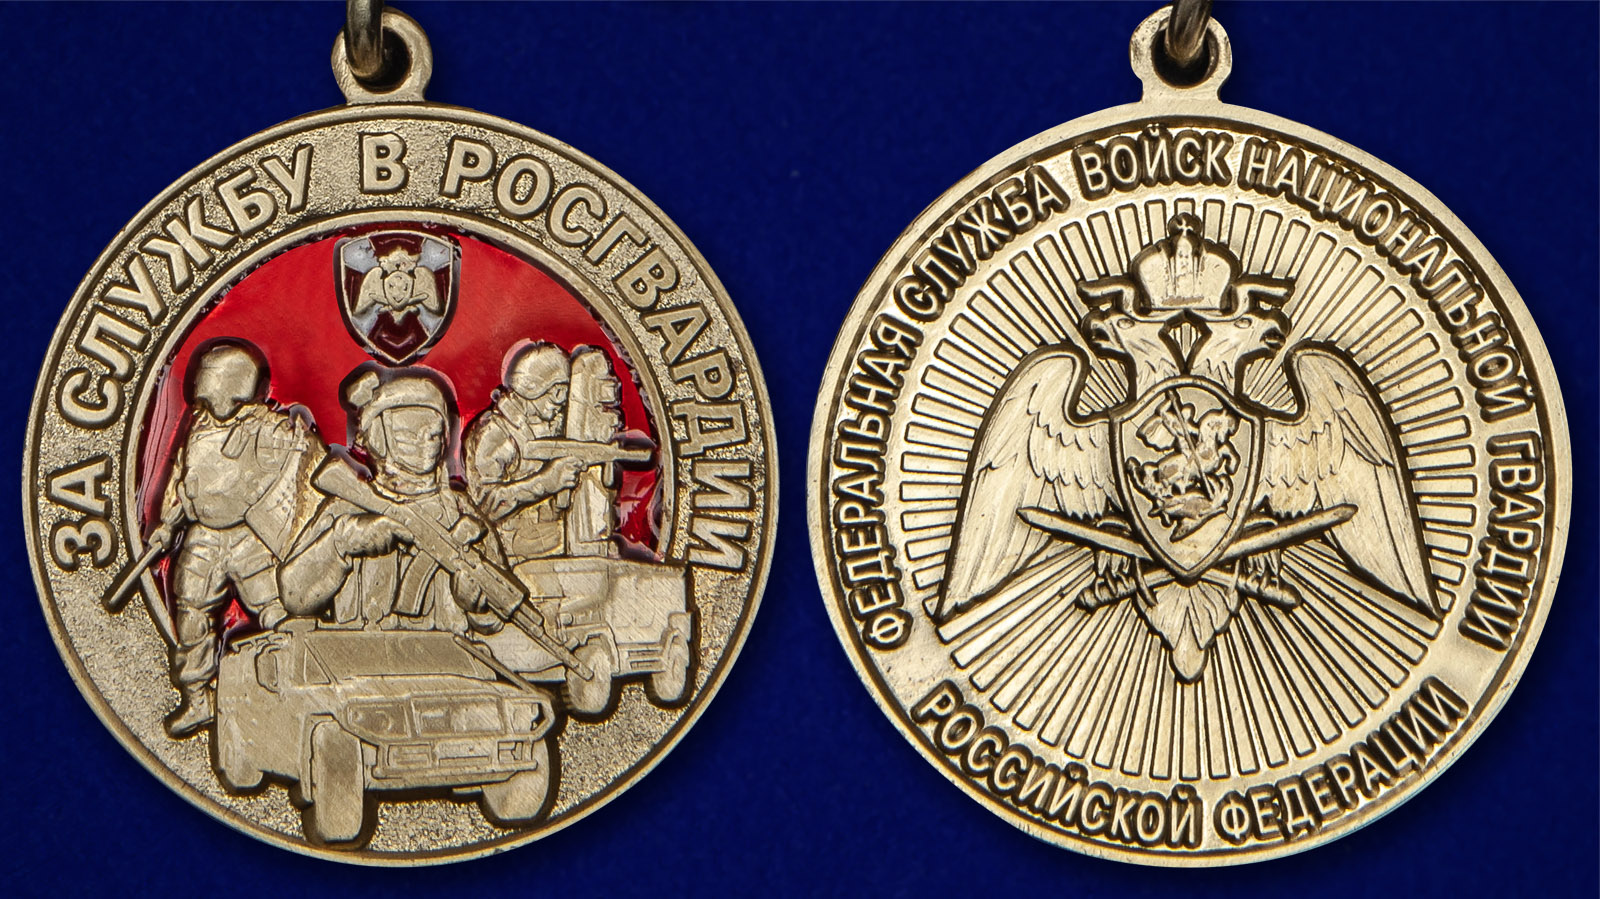 Медаль "За службу в Росгвардии" 